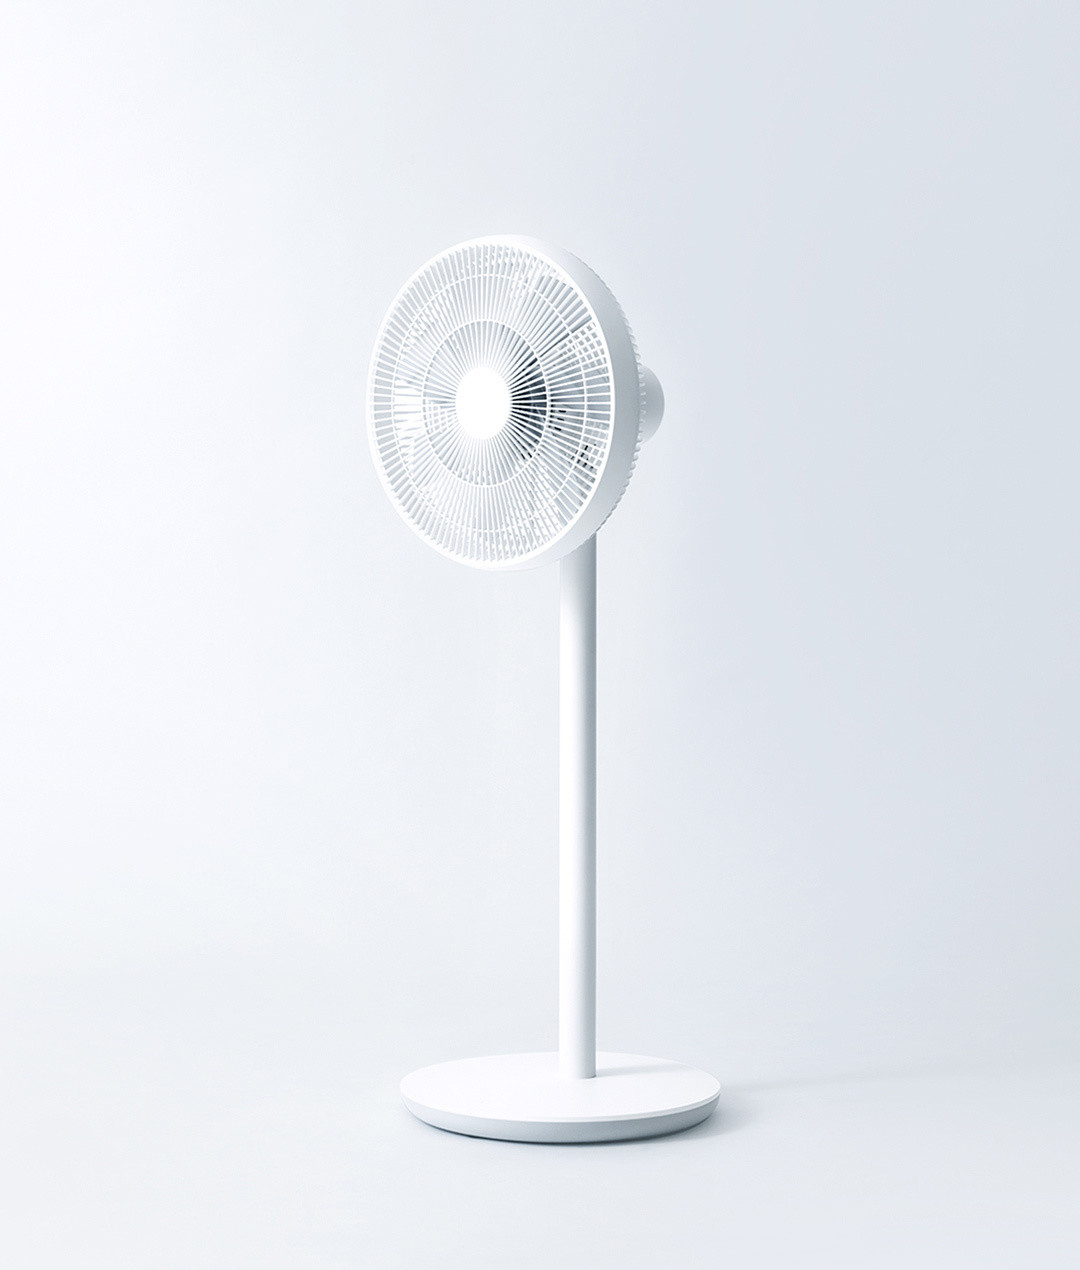 陪你度过这炎热的夏天 颜值兼具性能的电扇推荐